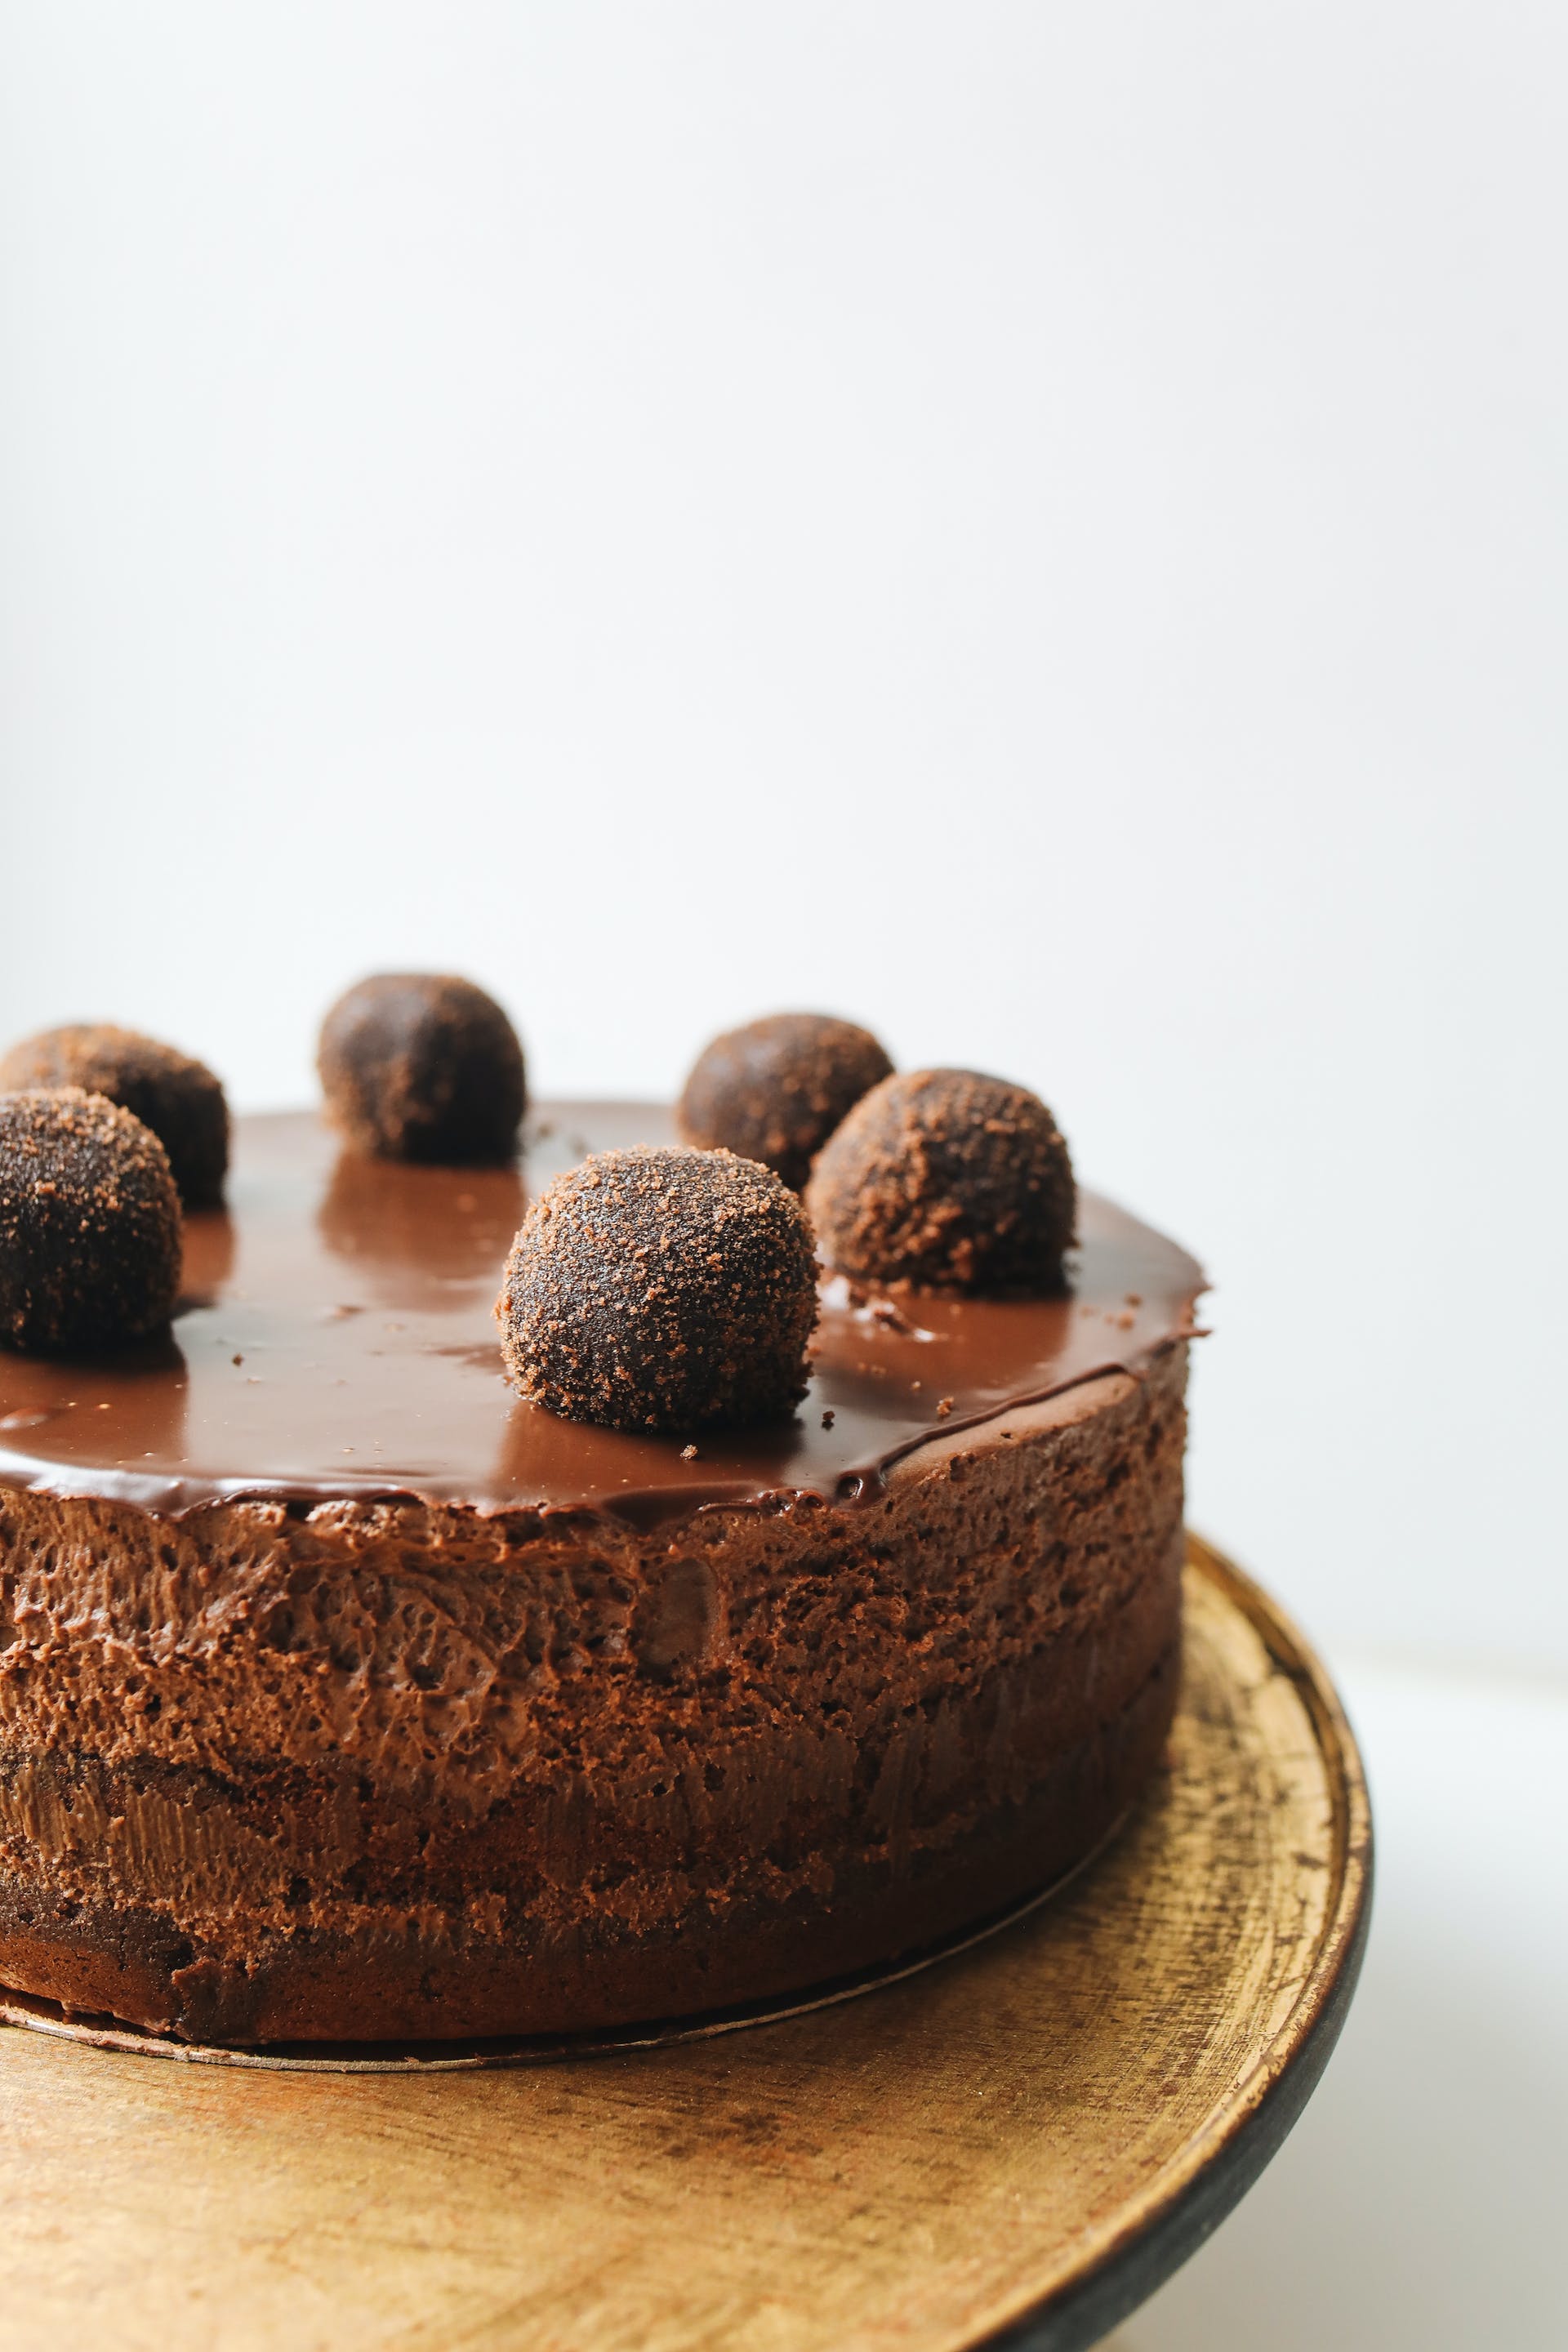 Gâteau d'anniversaire | Source : Pexels